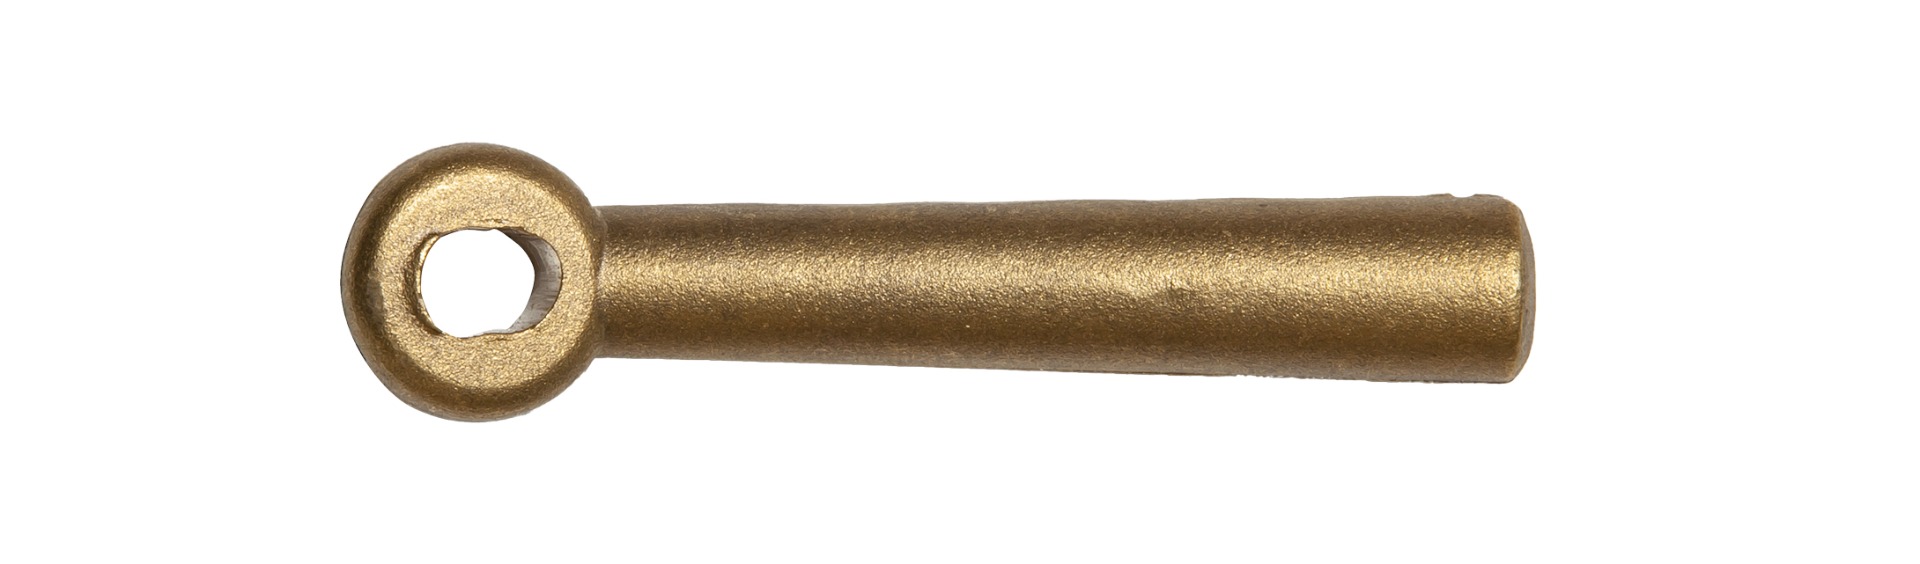 Chieftan 12mm Gauge Cock Handle